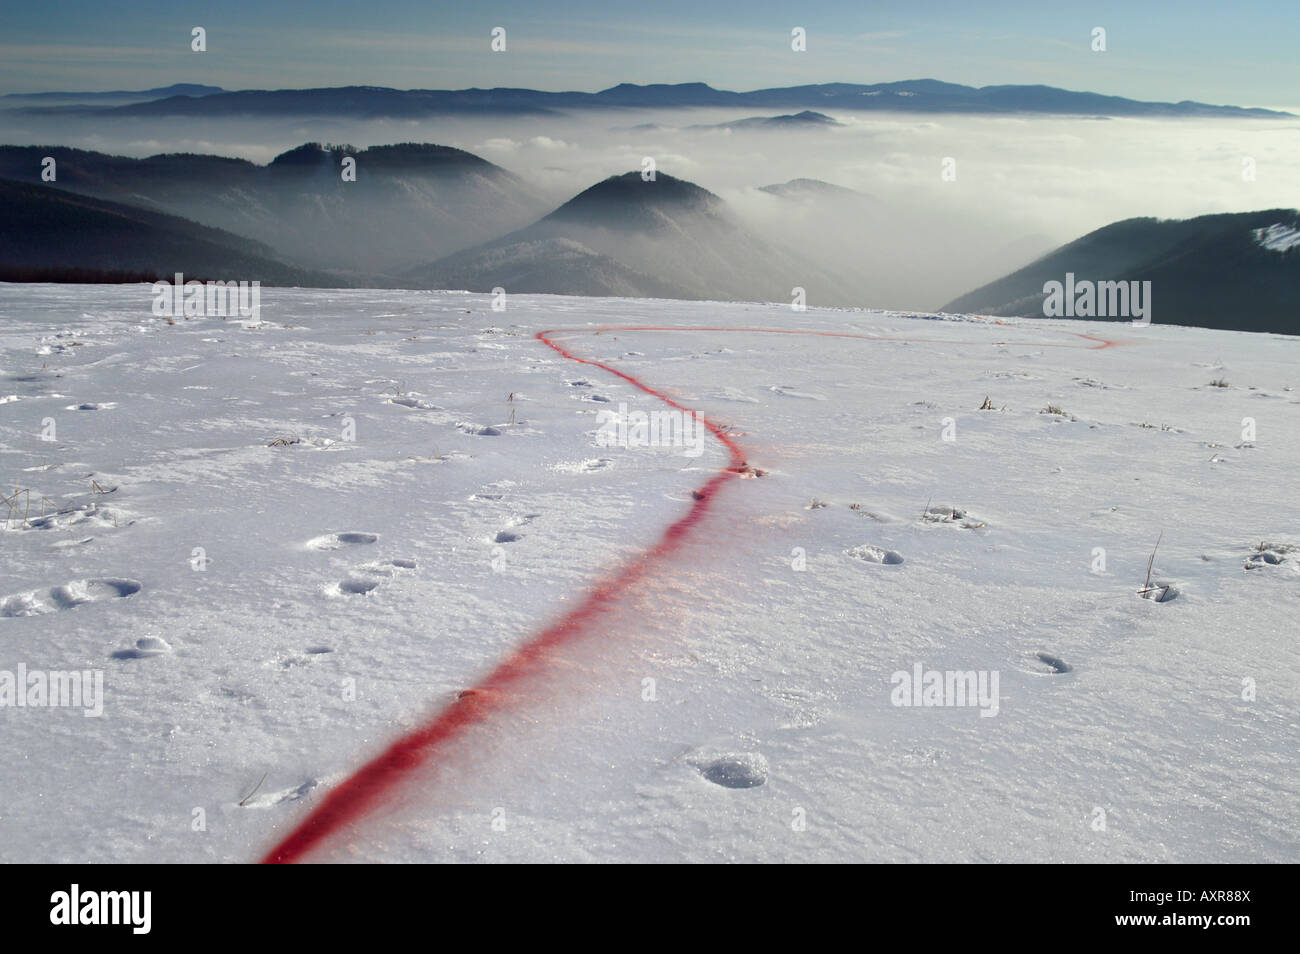 Ligne de pulvérisation de peinture rouge plaine neige mountain land art land-art earthworks, Tatry Slovakia, auteur Tomas Kopecny Banque D'Images